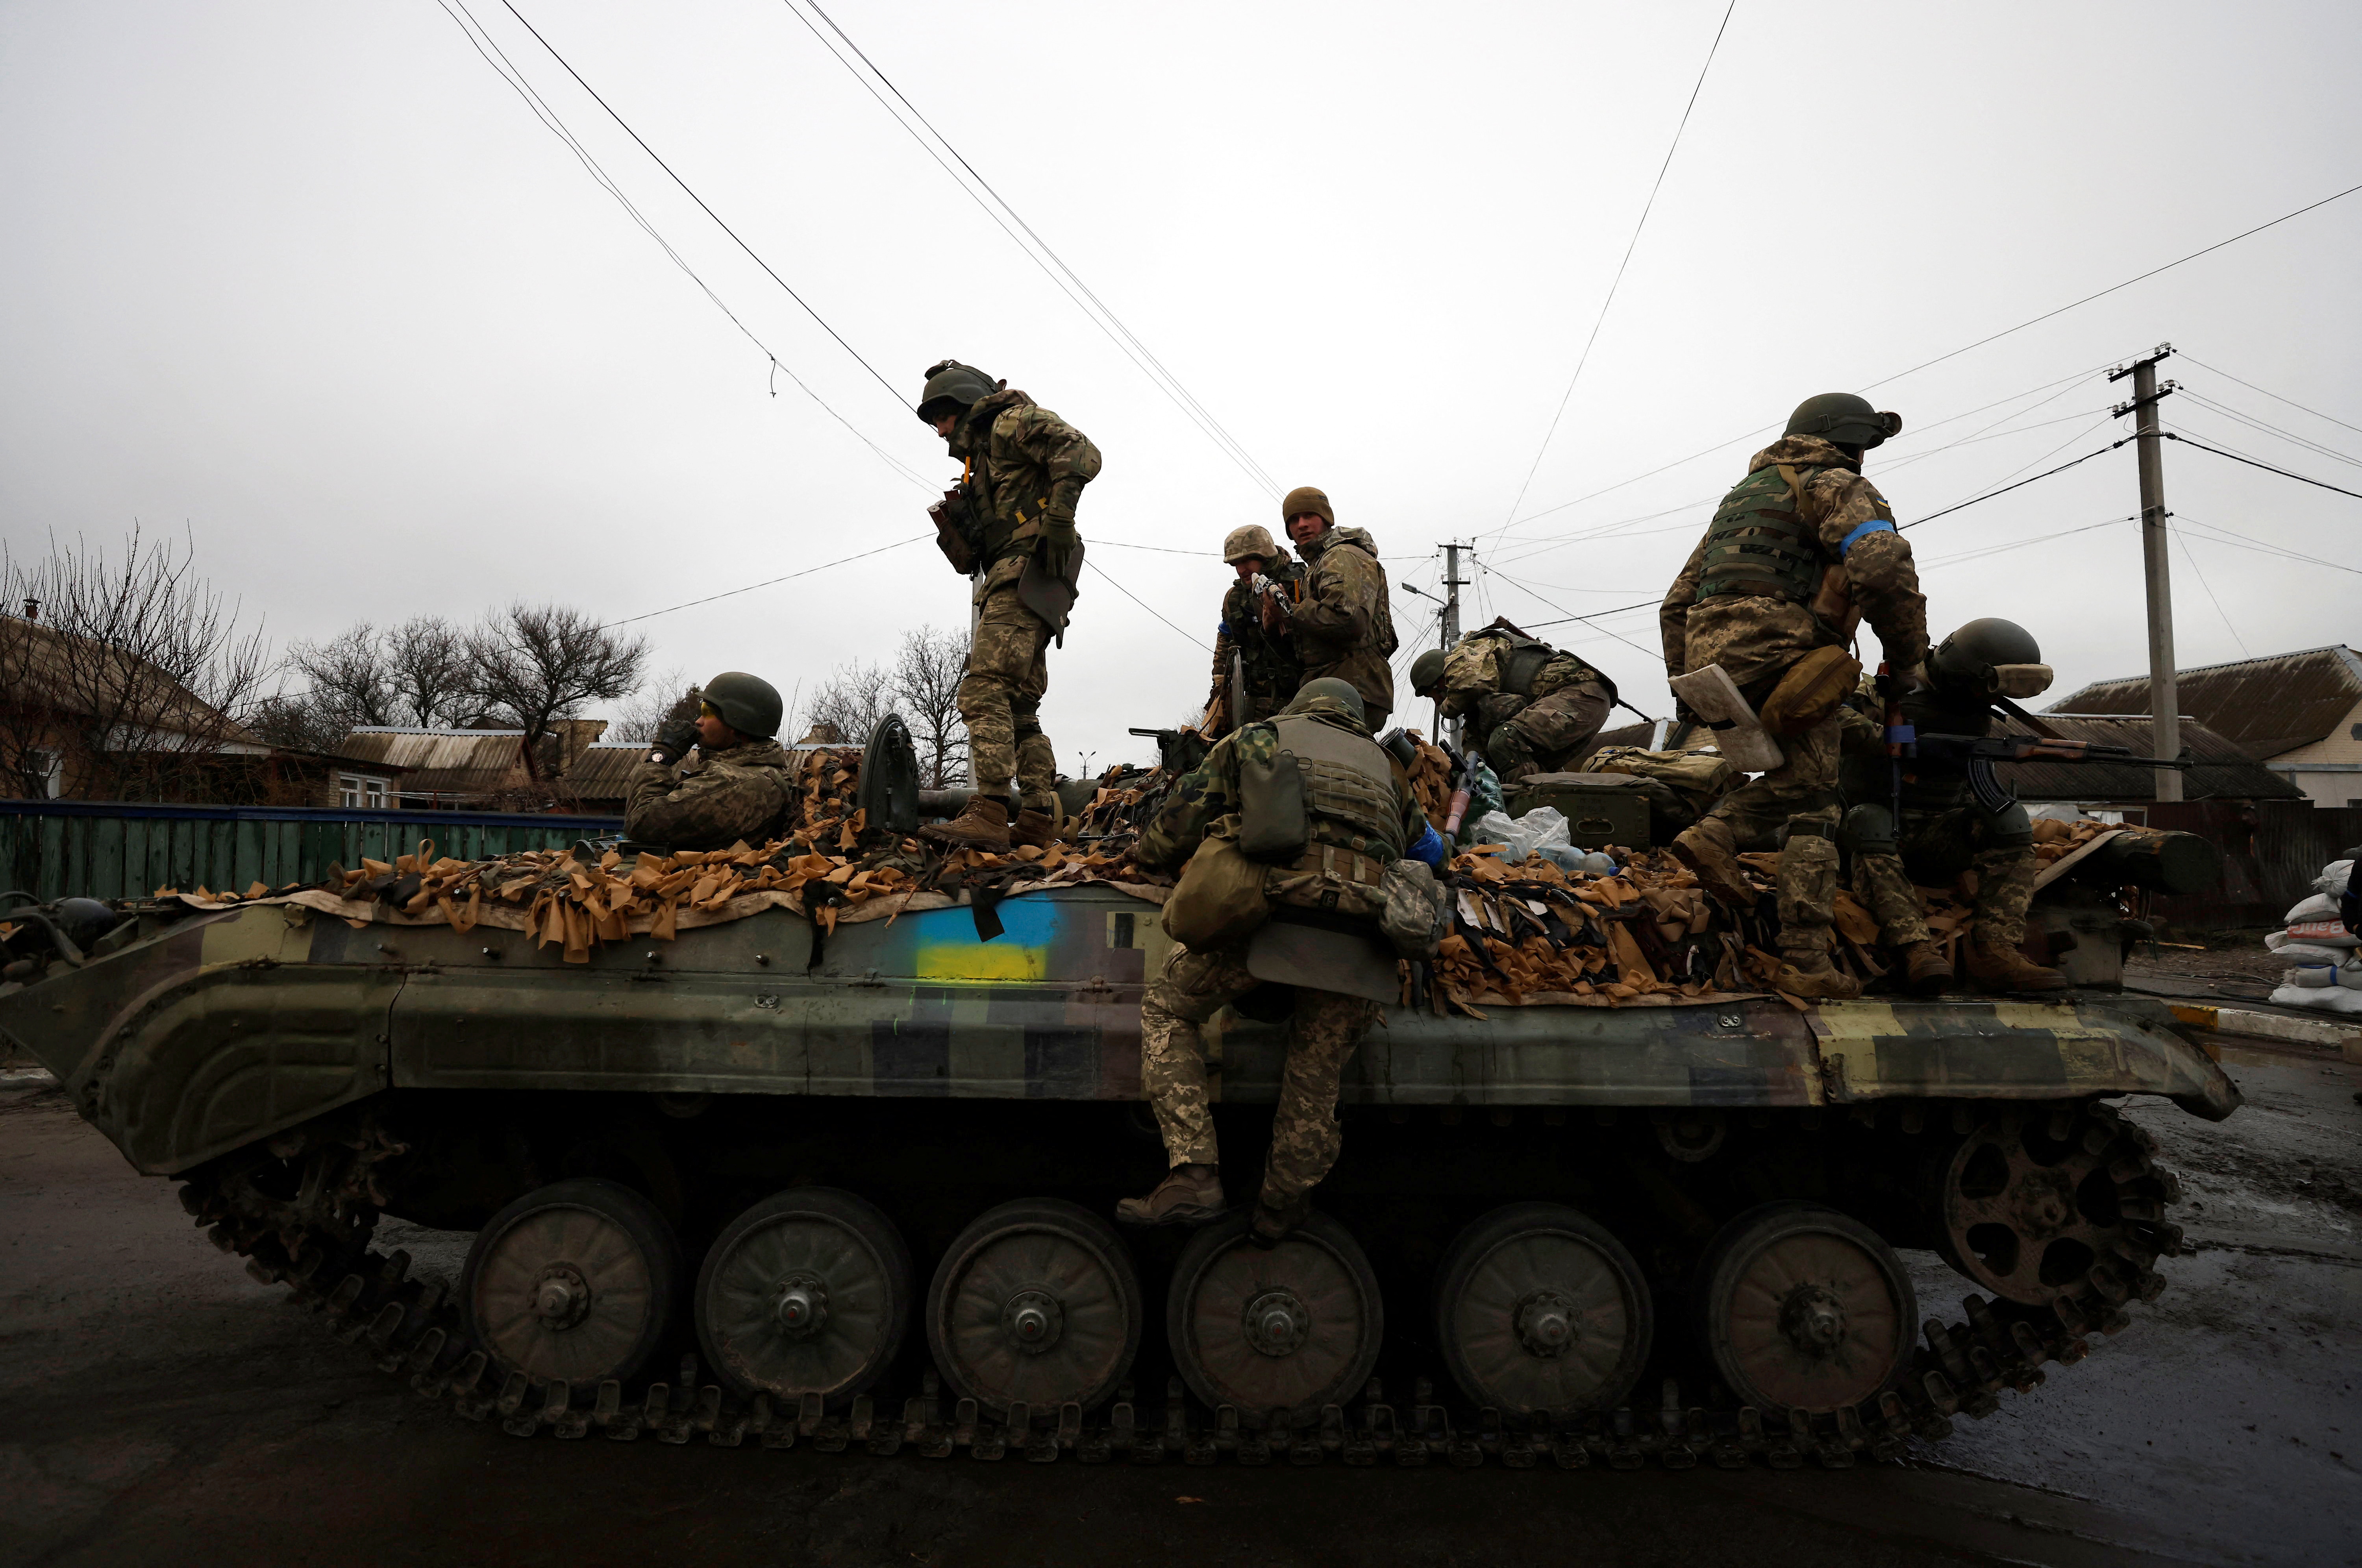 Ukrainische Soldaten werden am 2. April 2022 in der Region Kiew in der Ukraine während der russischen Invasion in der Ukraine in Pucha in ihrem Militärfahrzeug erschossen.  REUTERS / Zohra Bensemra